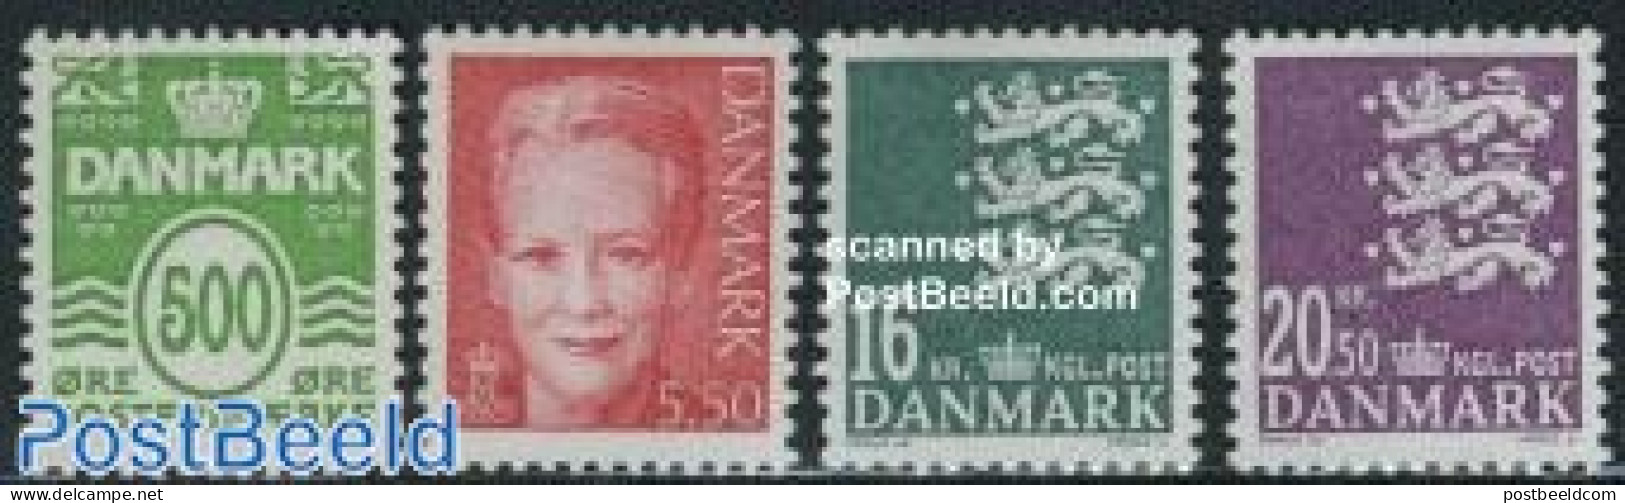 Denmark 2008 Definitives 4v, Mint NH - Unused Stamps